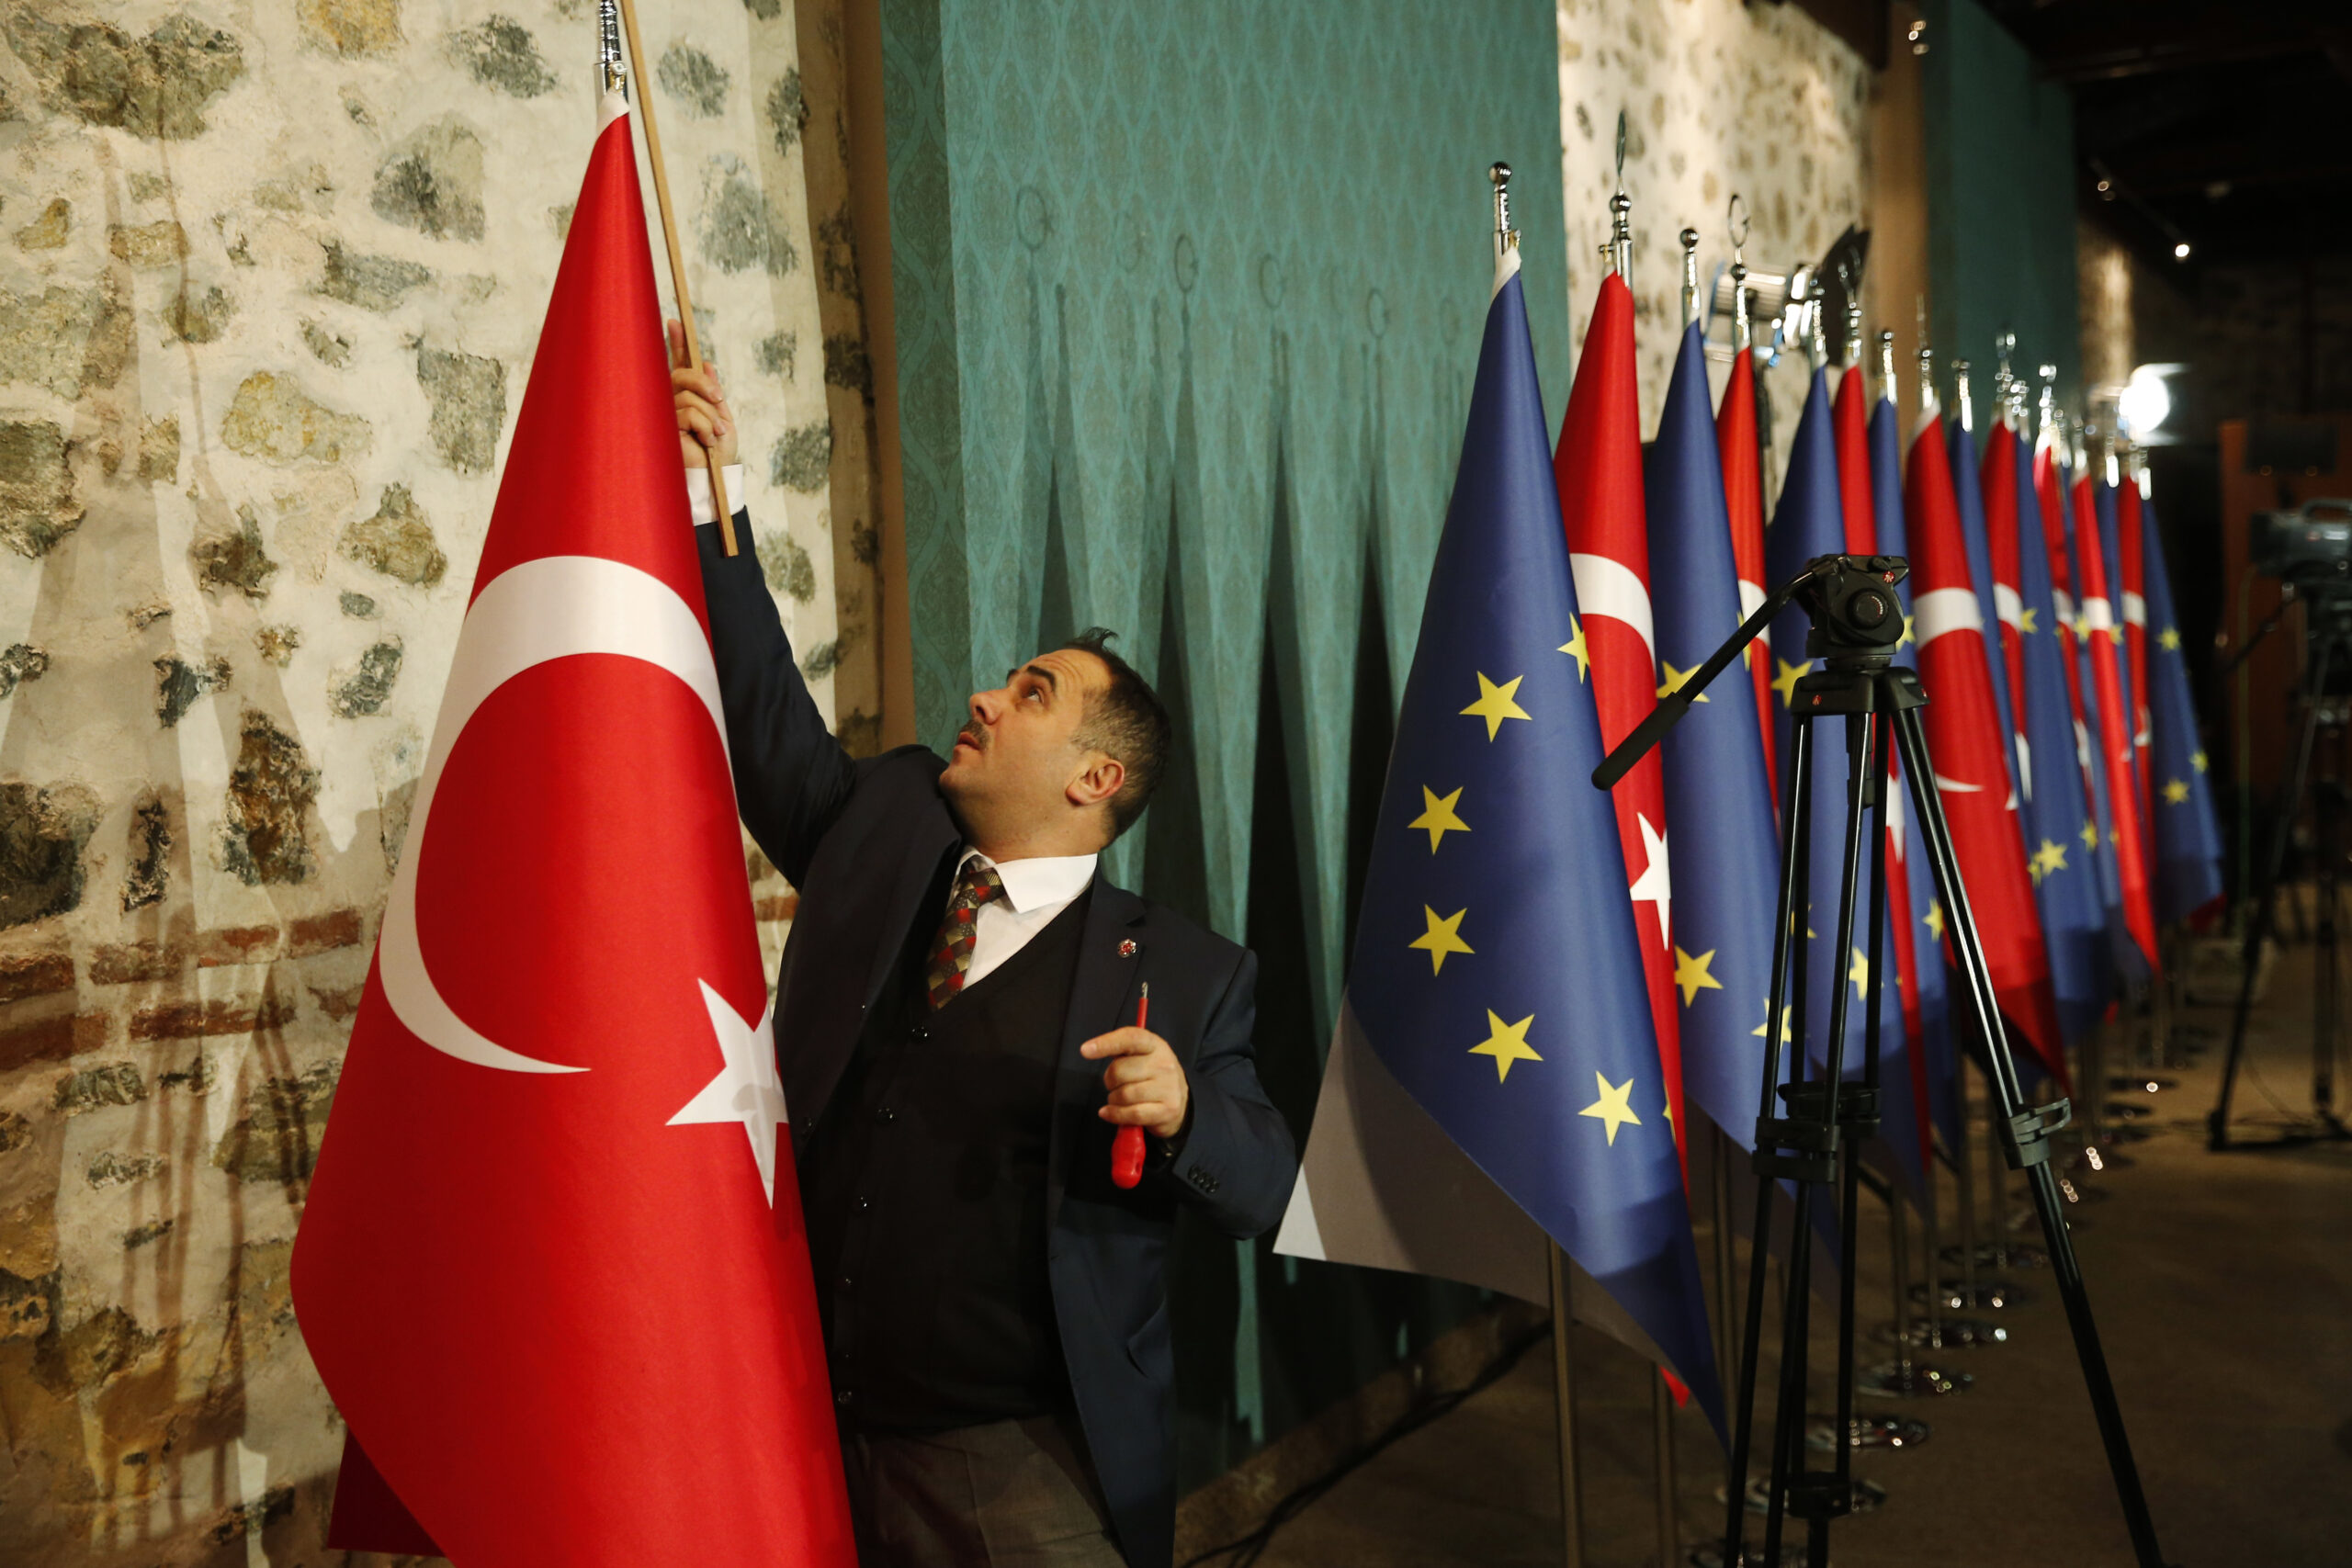 ΥΠΕΞ Βελγίου: Θα προσκαλέσουμε την Τουρκία για τον εορτασμό της 20ης επετείου της μεγάλης διεύρυνσης της ΕΕ τον Απρίλιο